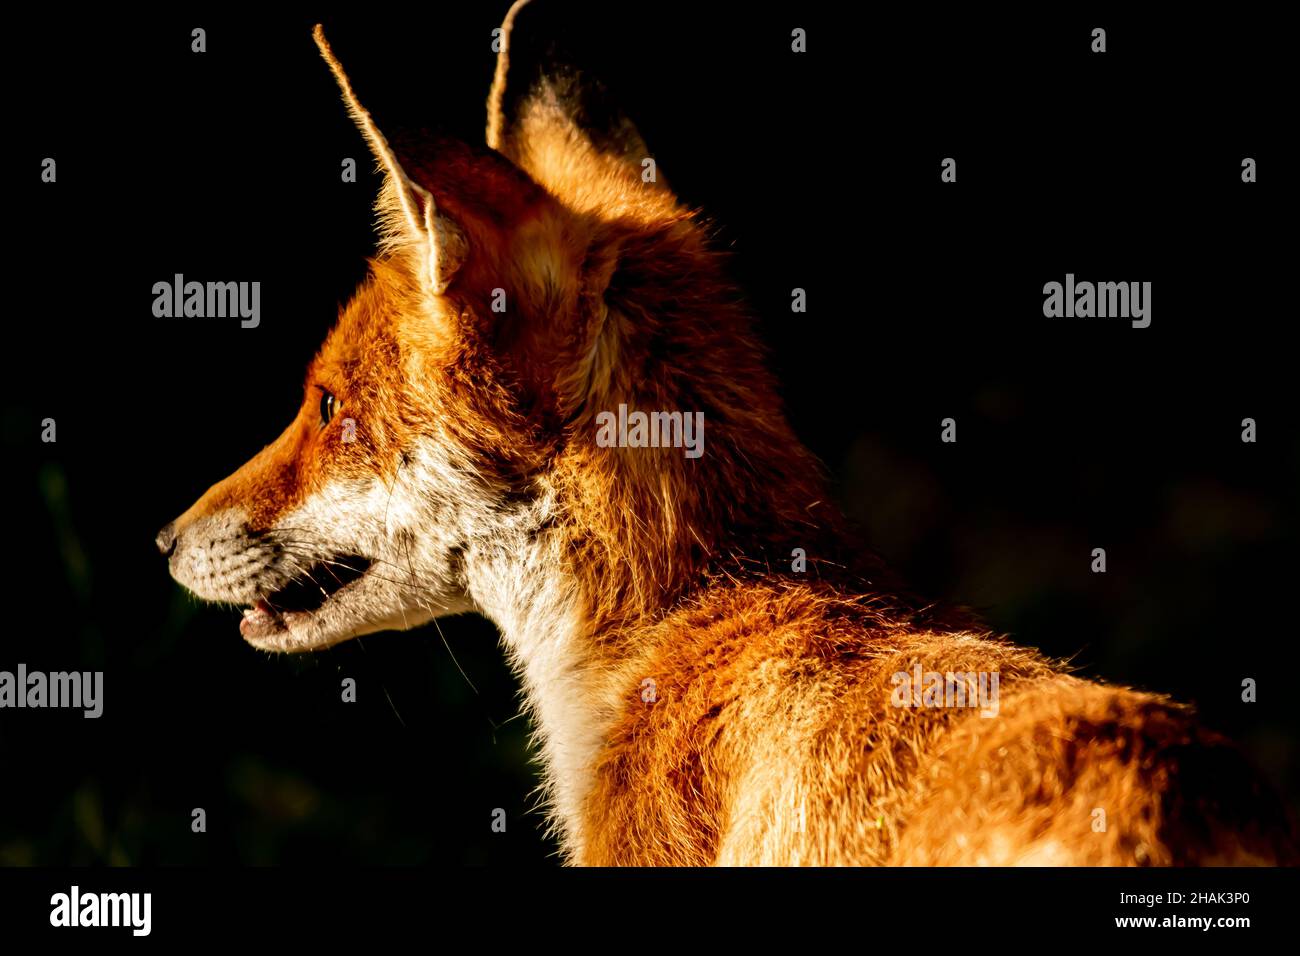 Red fox, Vulpes vulpes. Orange fur coat animal. Fox in nature. Wildlife scene. Habitat Europe, Asia, North America Stock Photo